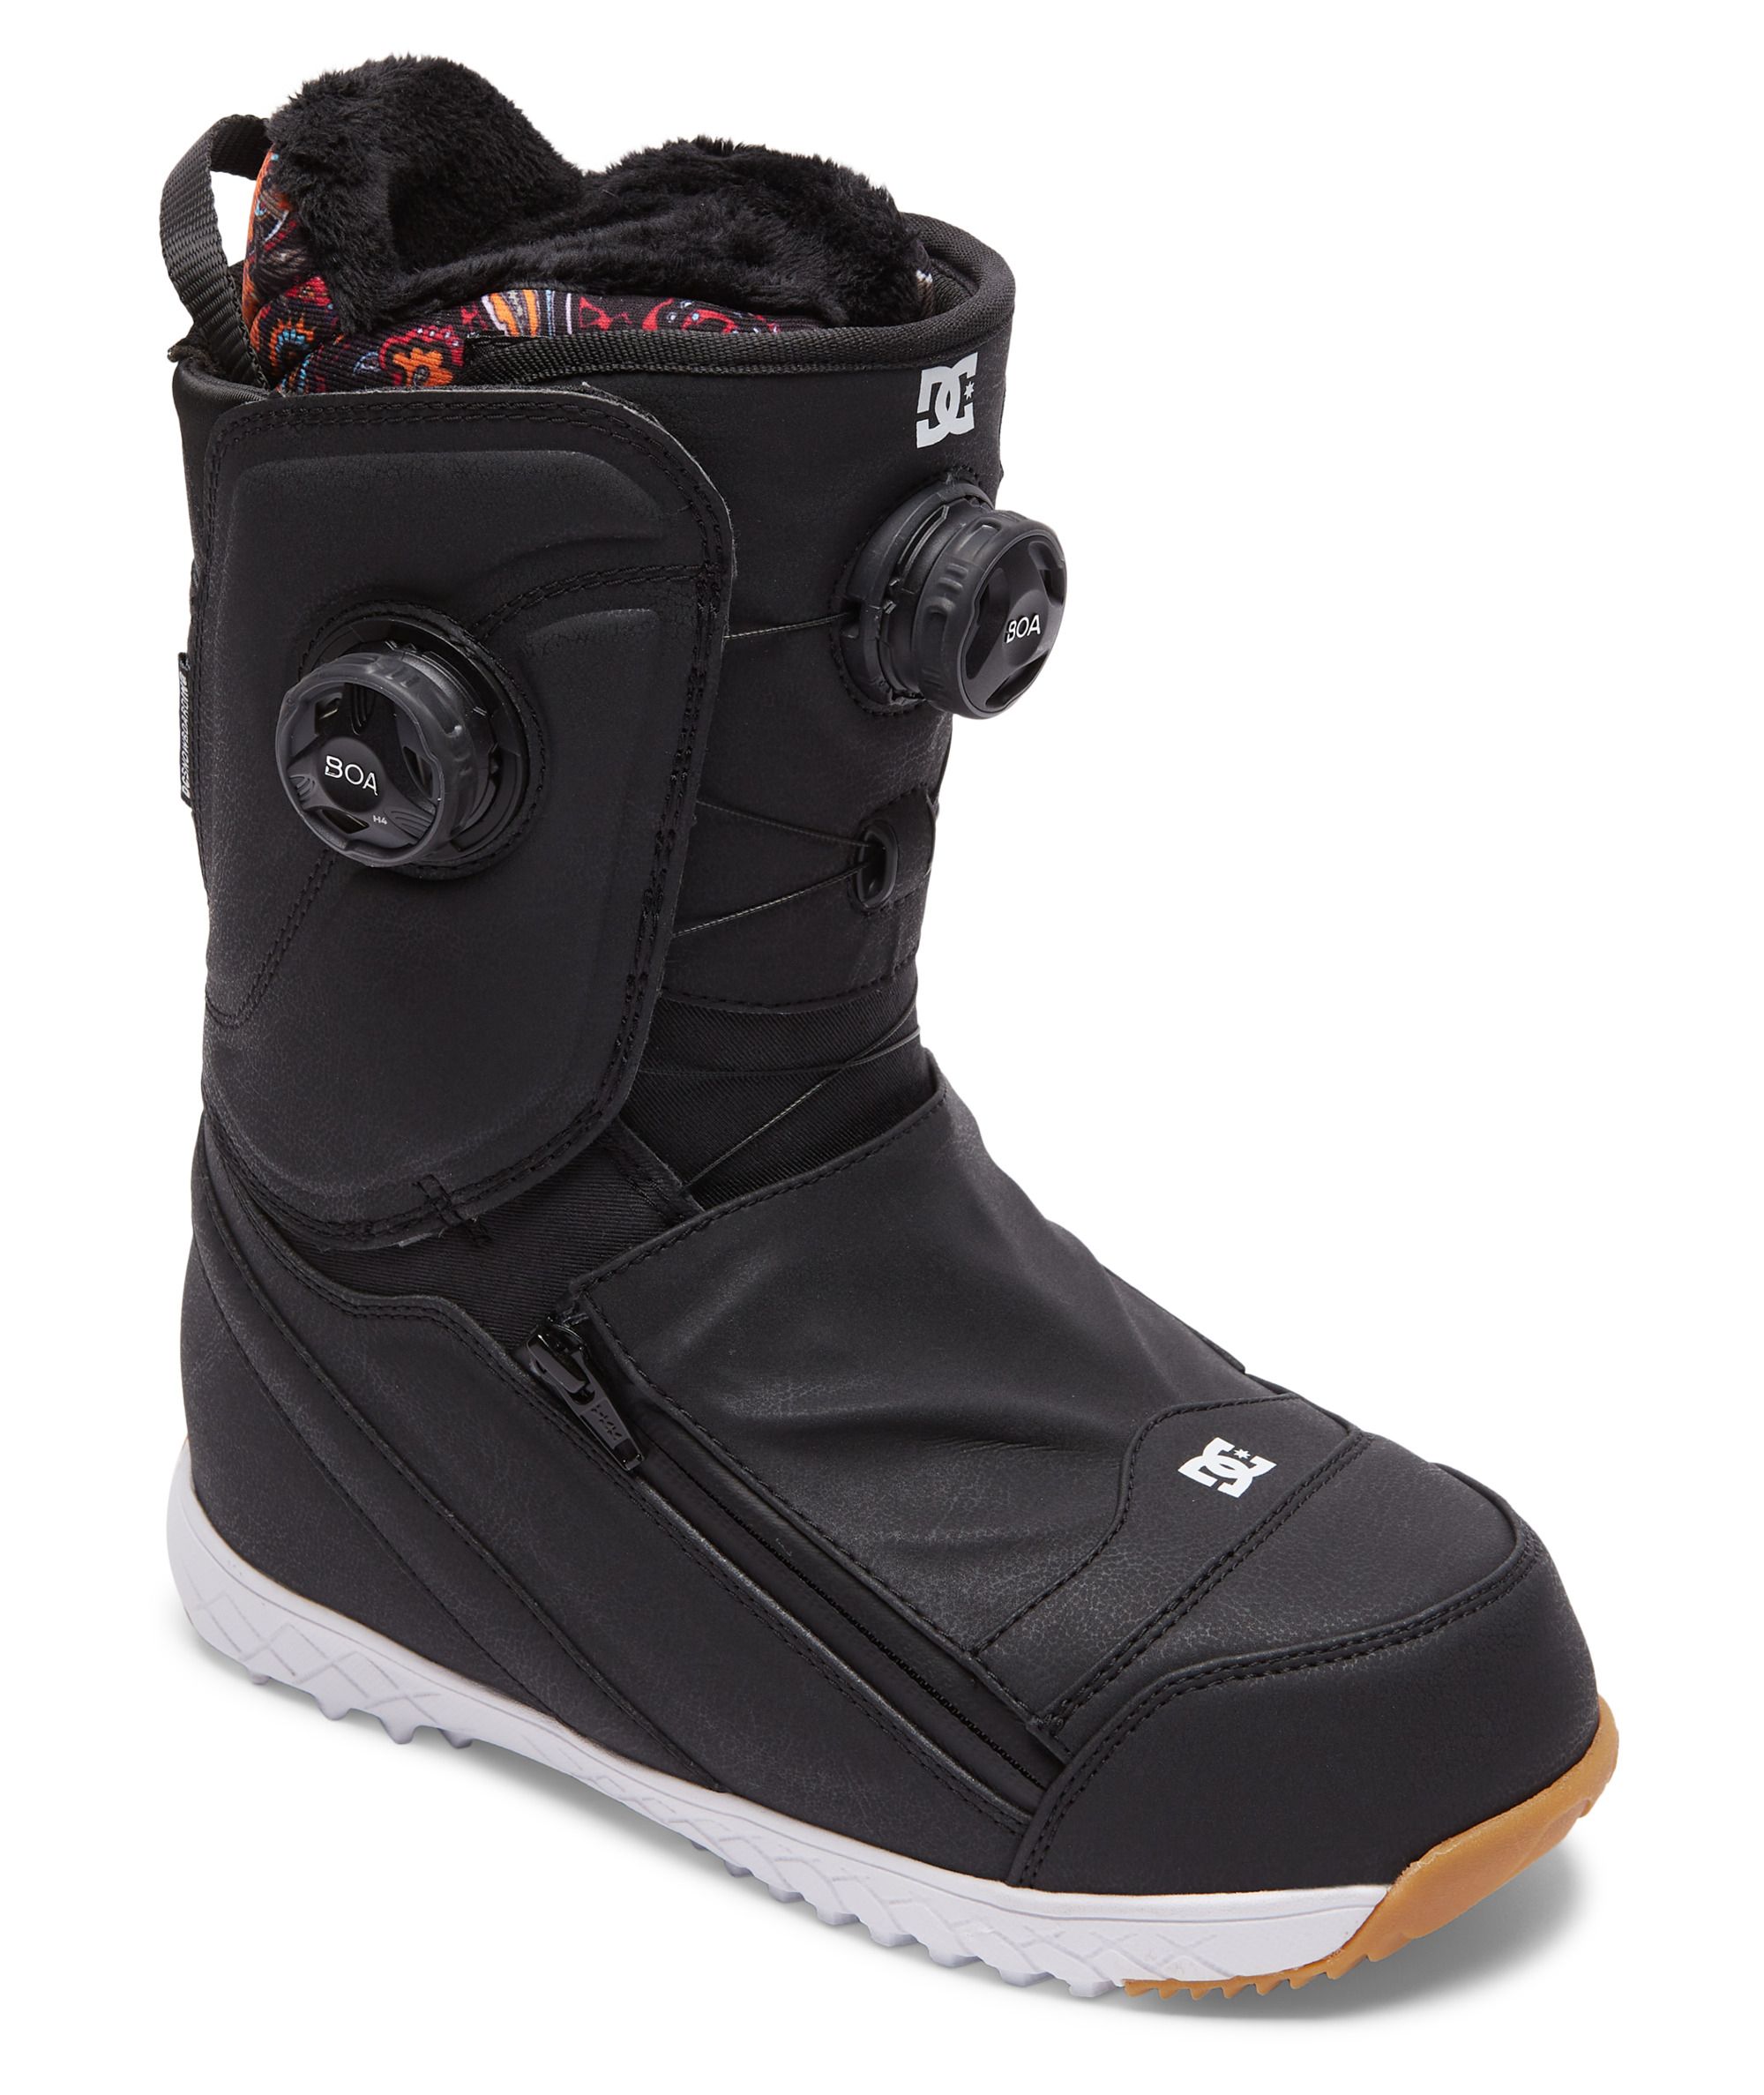 Boots de snowboard Mora Black/white/Black